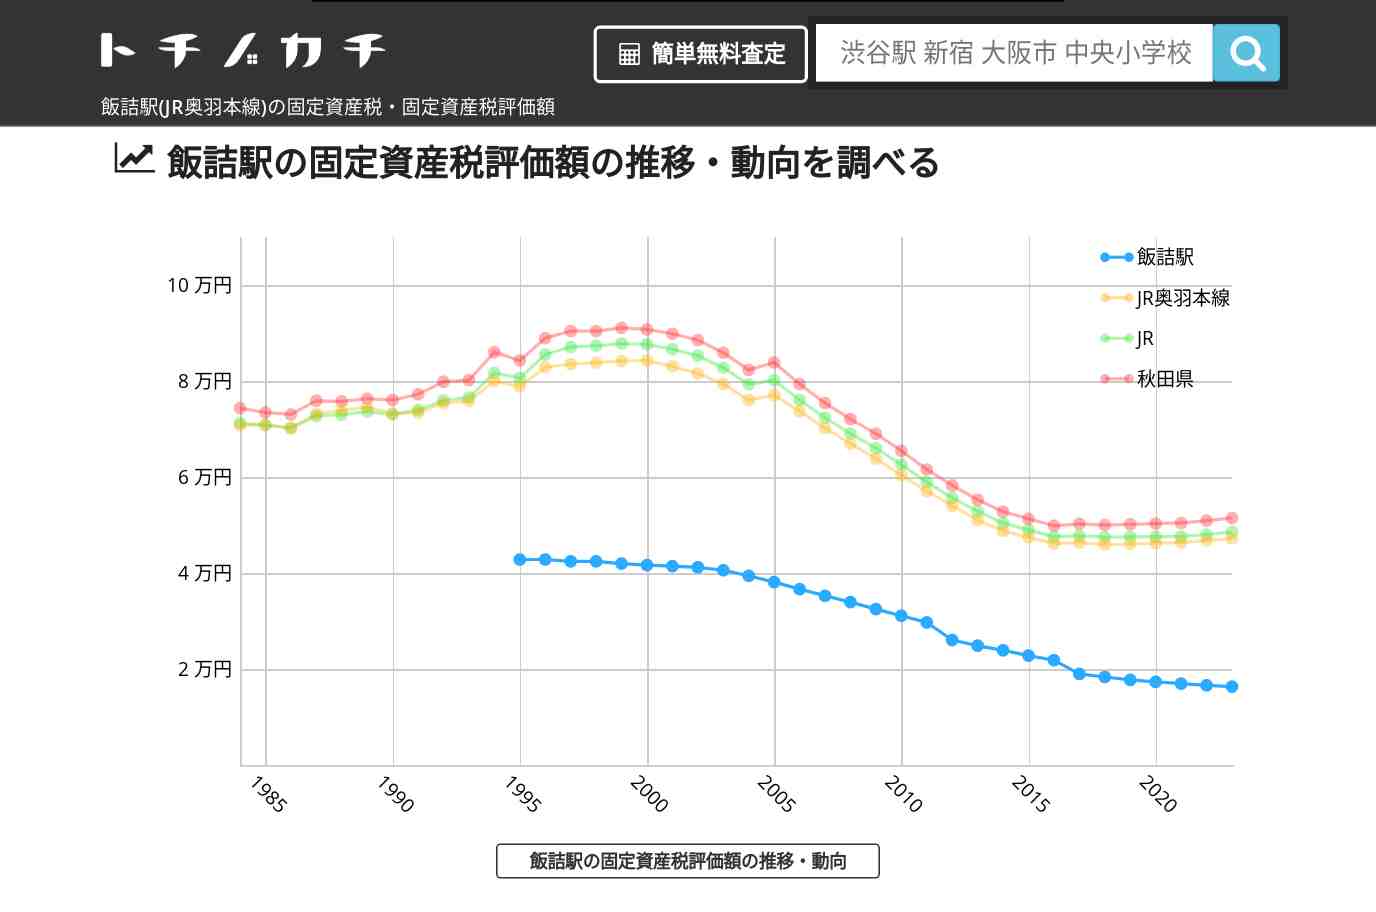 飯詰駅(JR奥羽本線)の固定資産税・固定資産税評価額 | トチノカチ